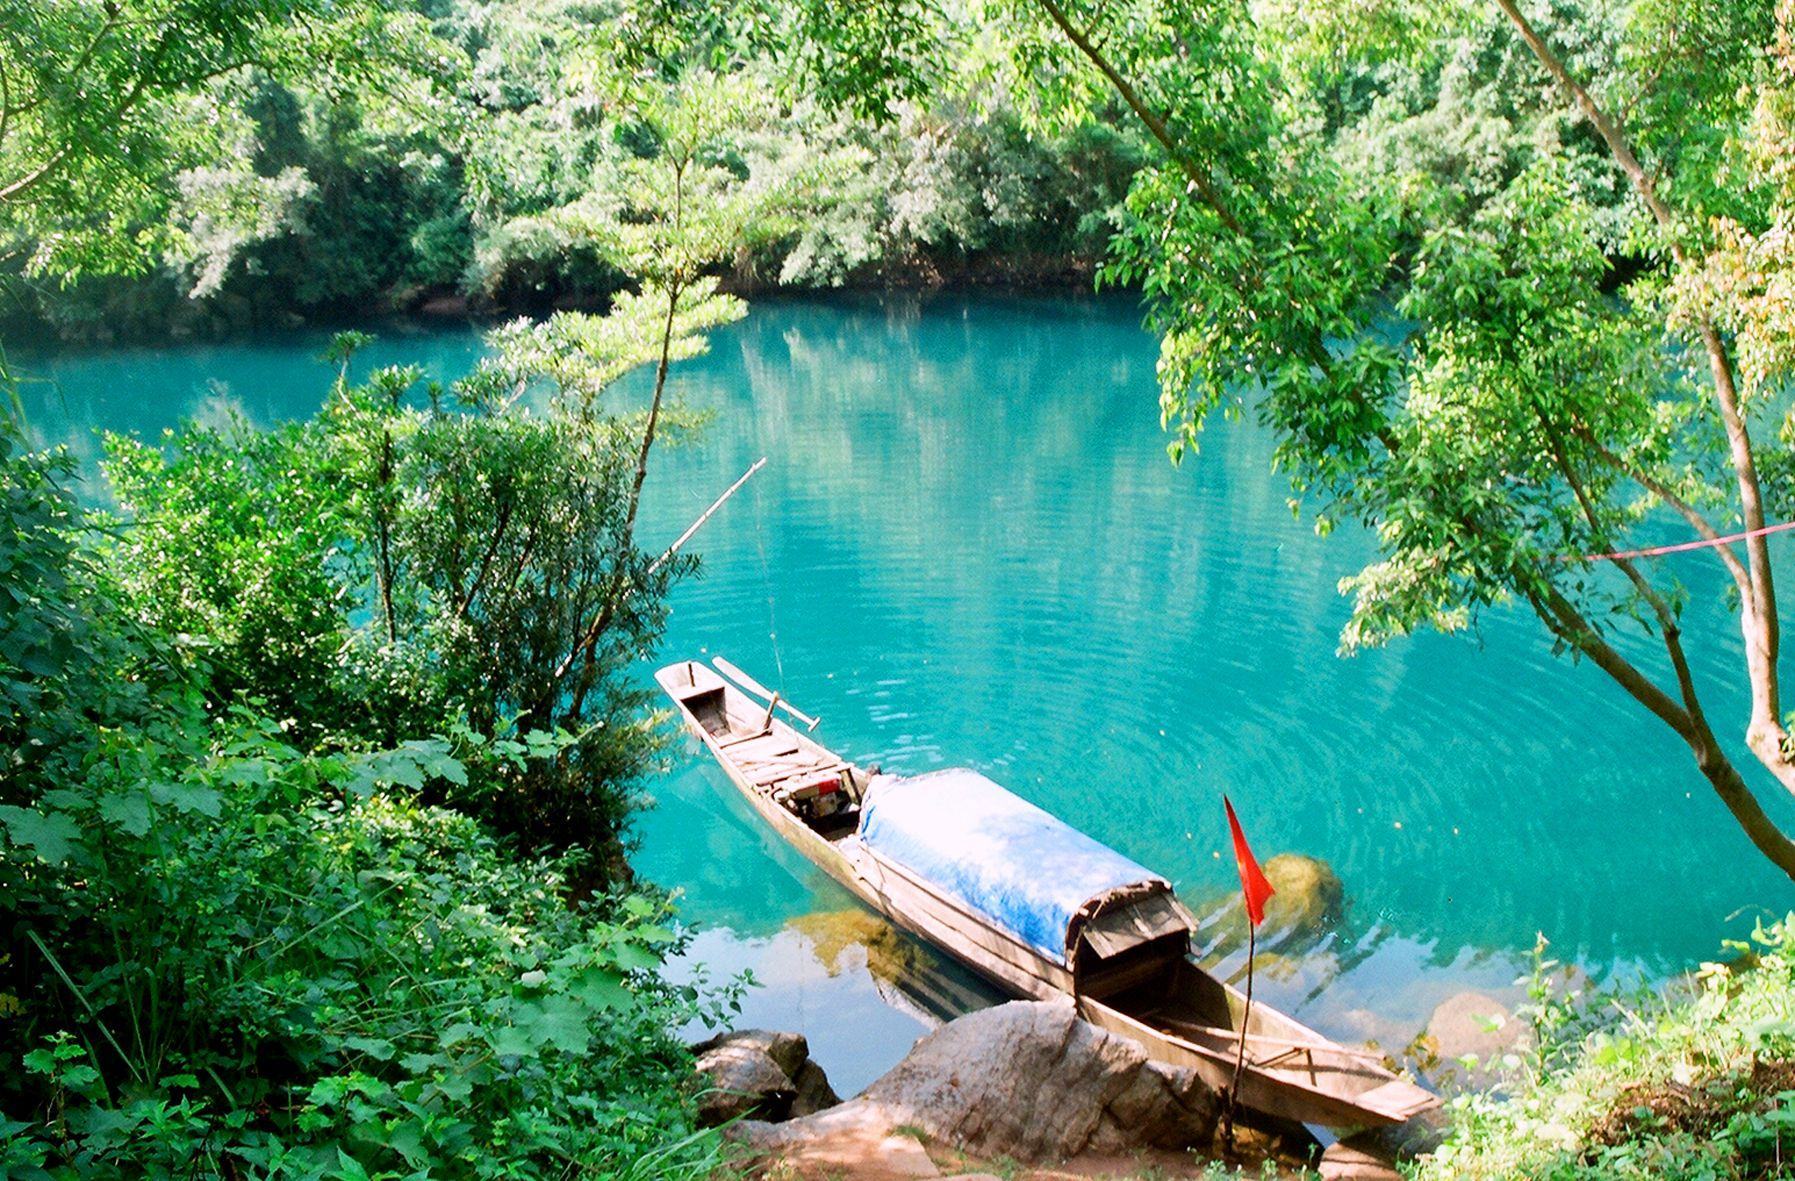 Hình nền laptop con thuyền nhỏ trên hồ nước trong xanh tuyệt đẹp